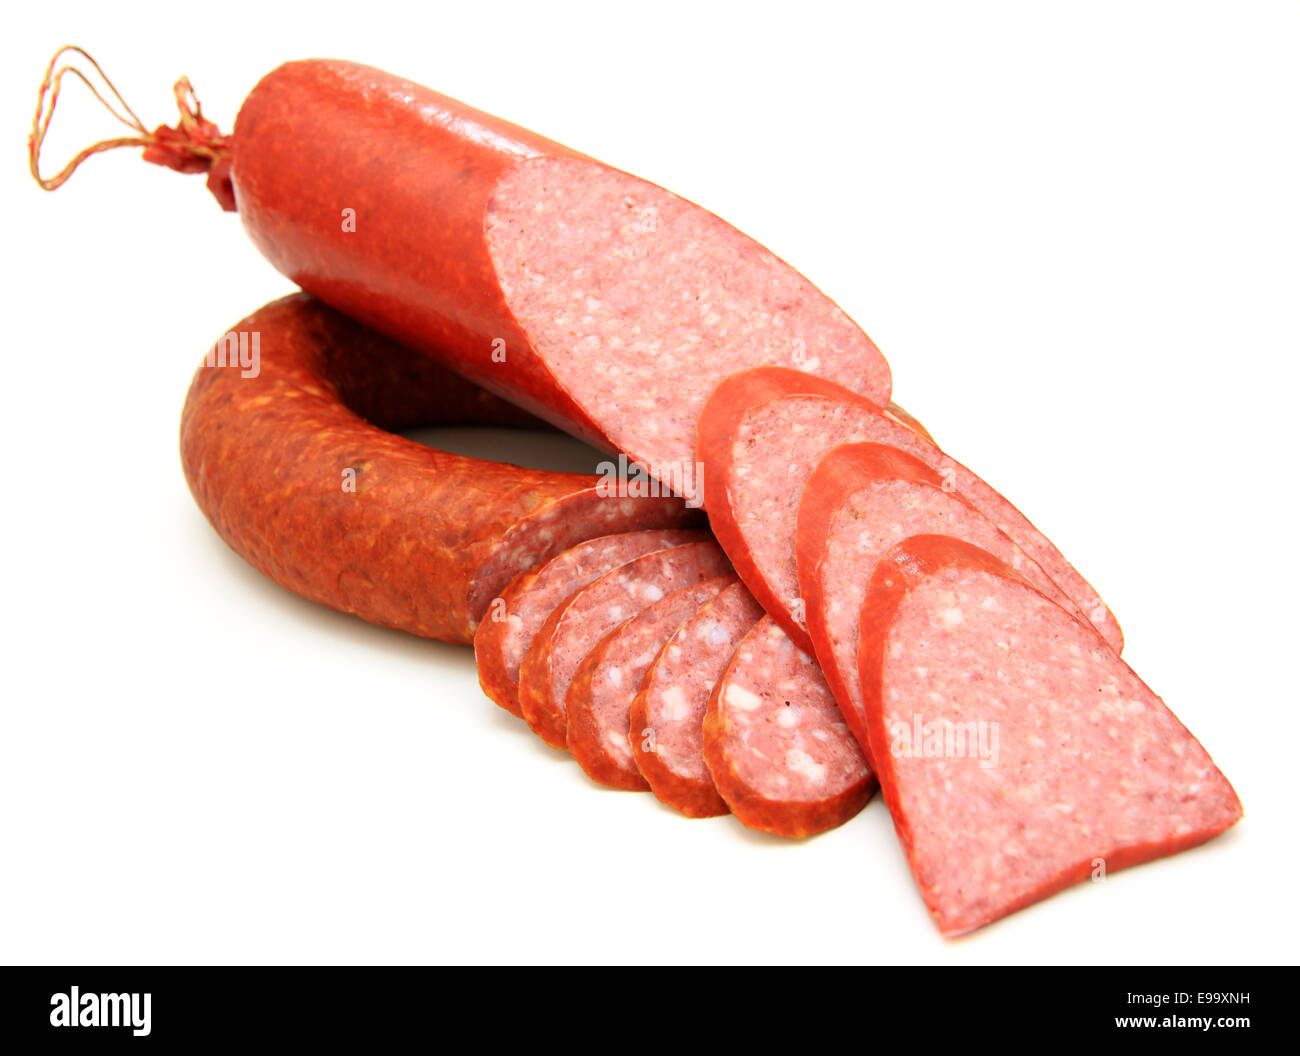 Tasty sausage Stock Photo